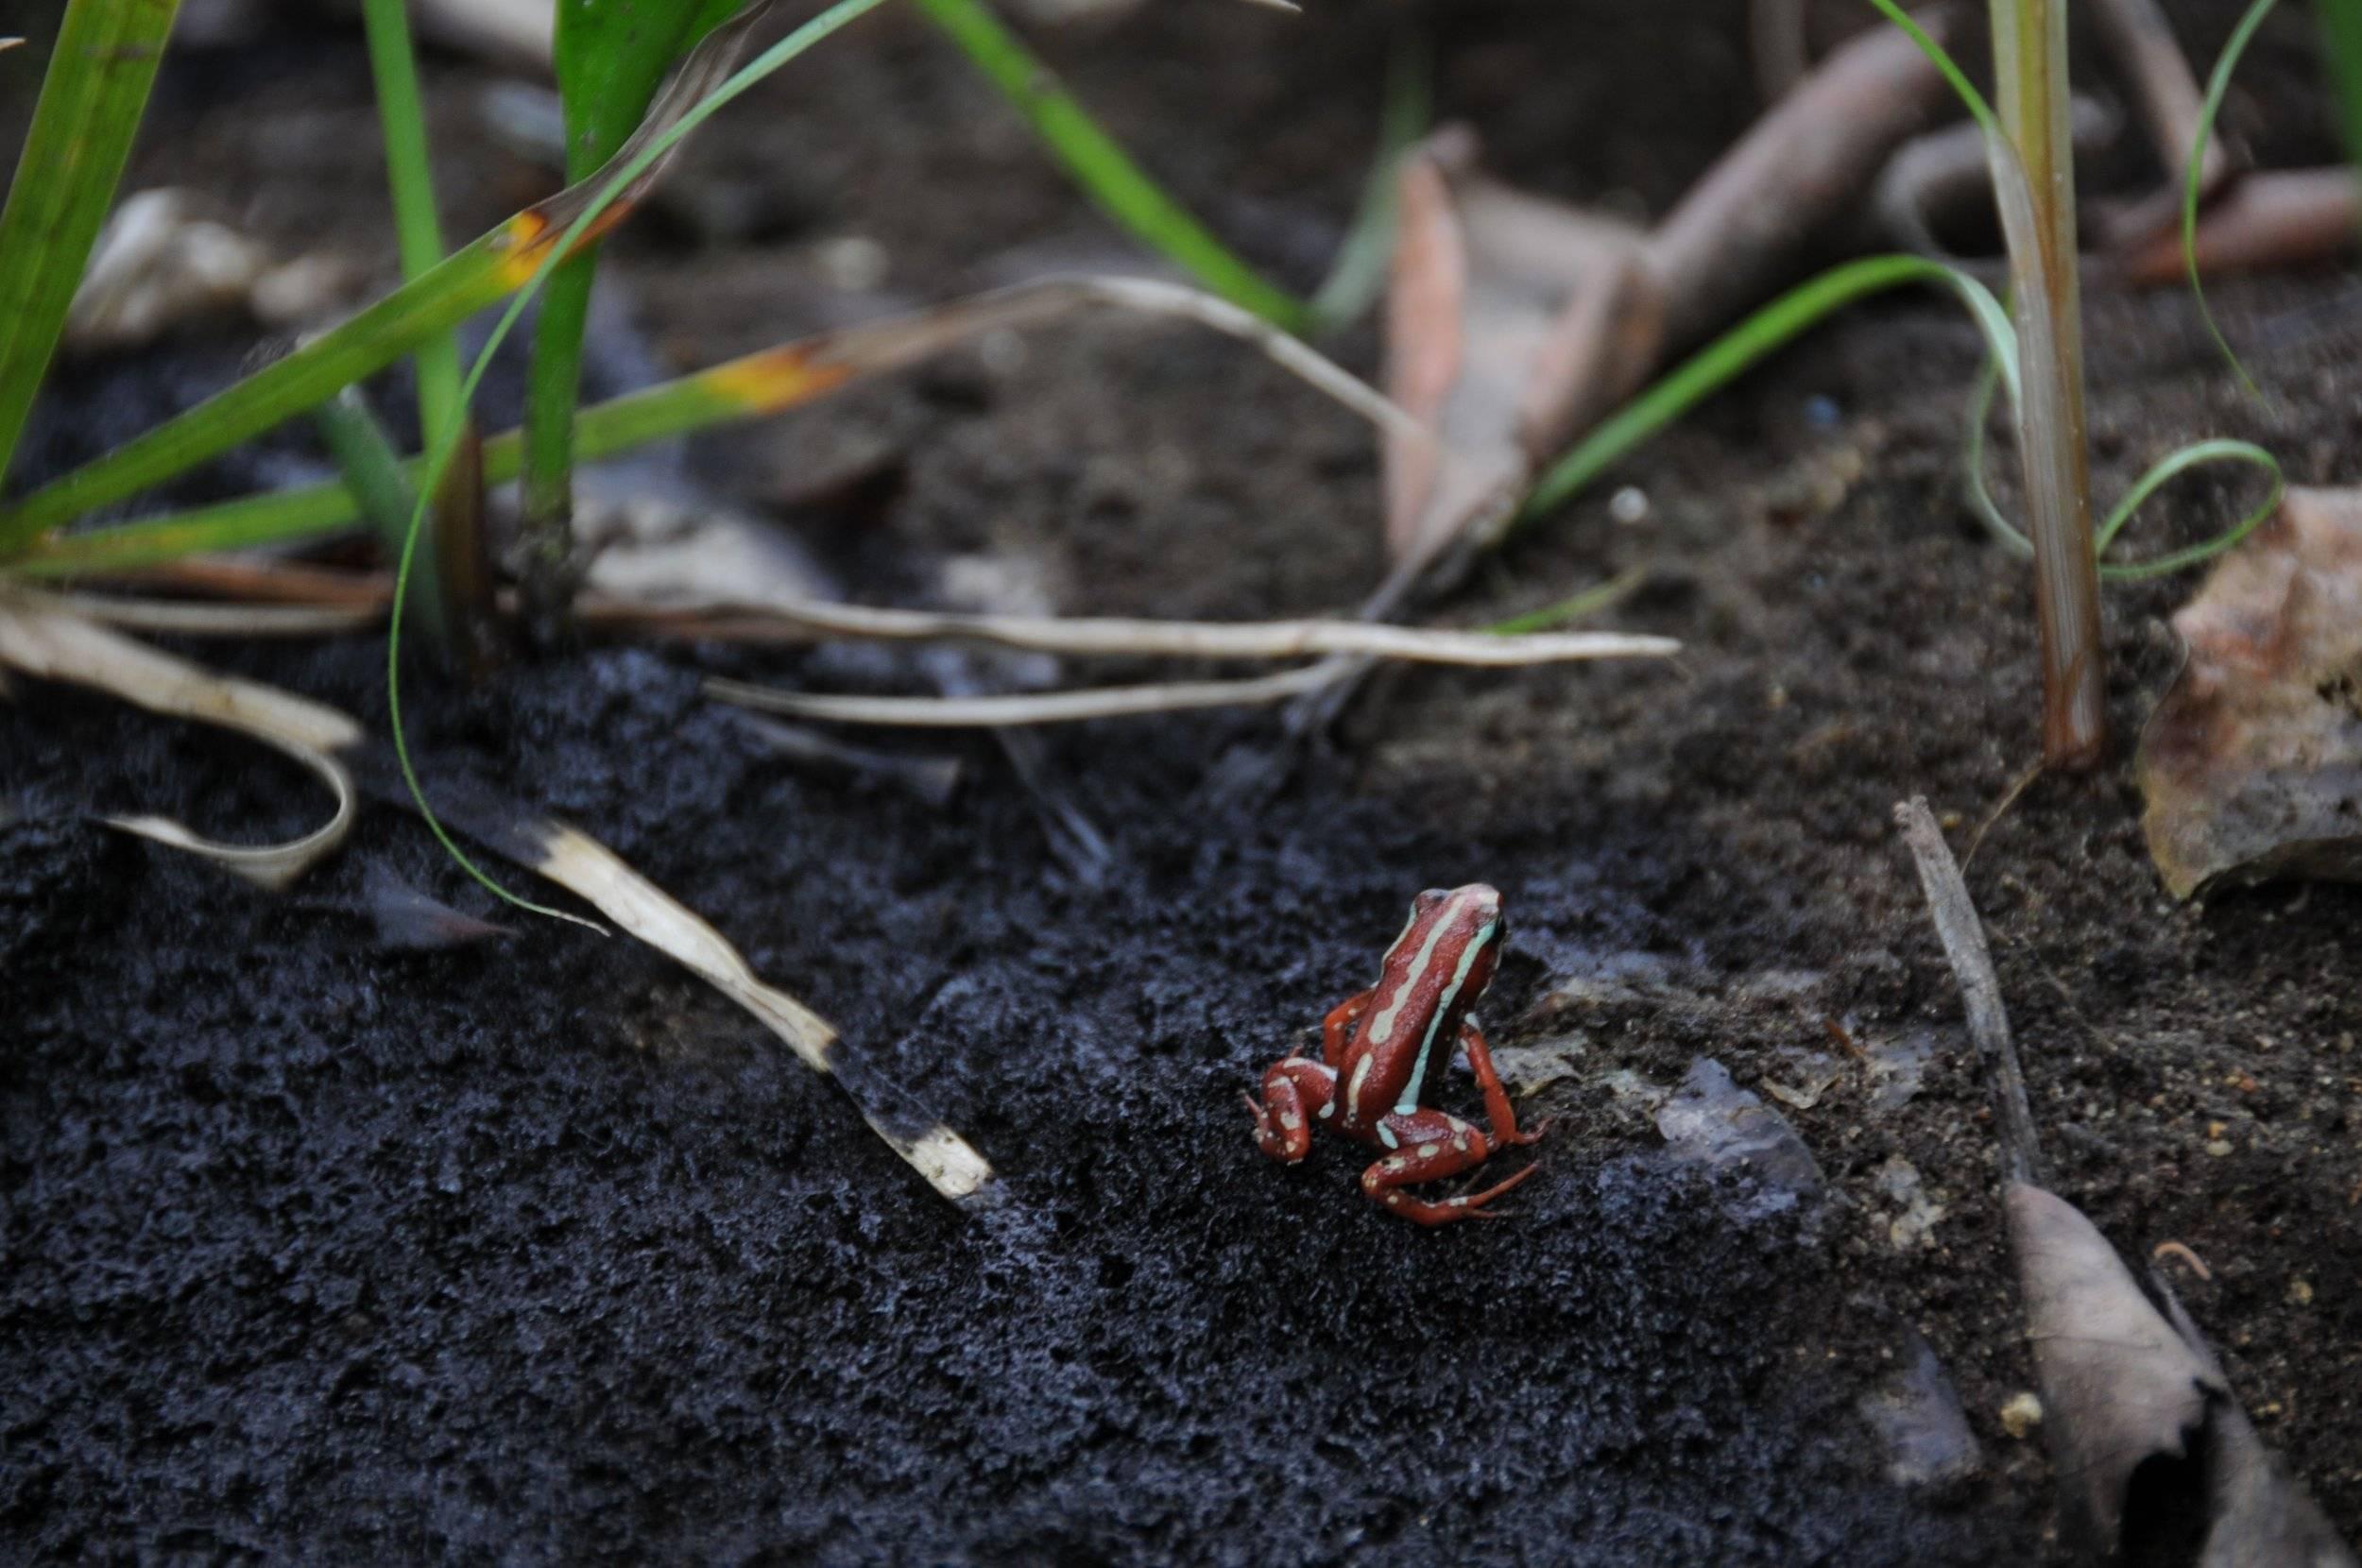 Les couleurs vives sont associées à la toxicité de ces petites grenouilles immangeables.